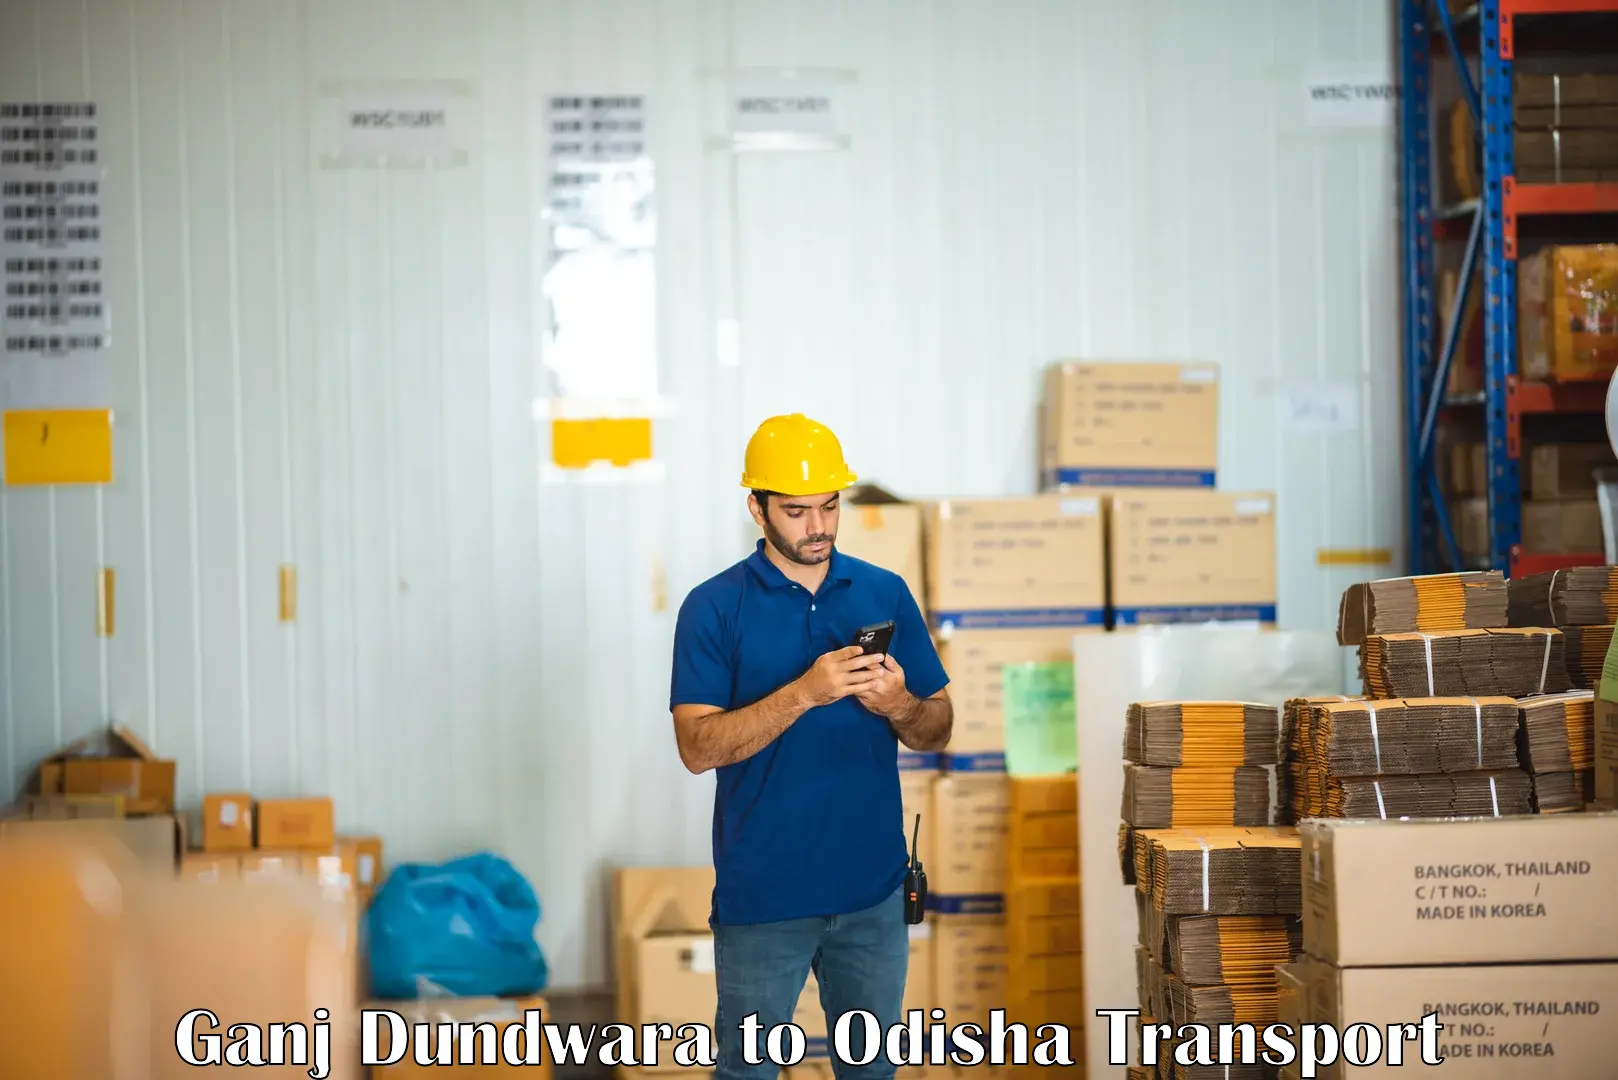 India truck logistics services in Ganj Dundwara to Kandhamal